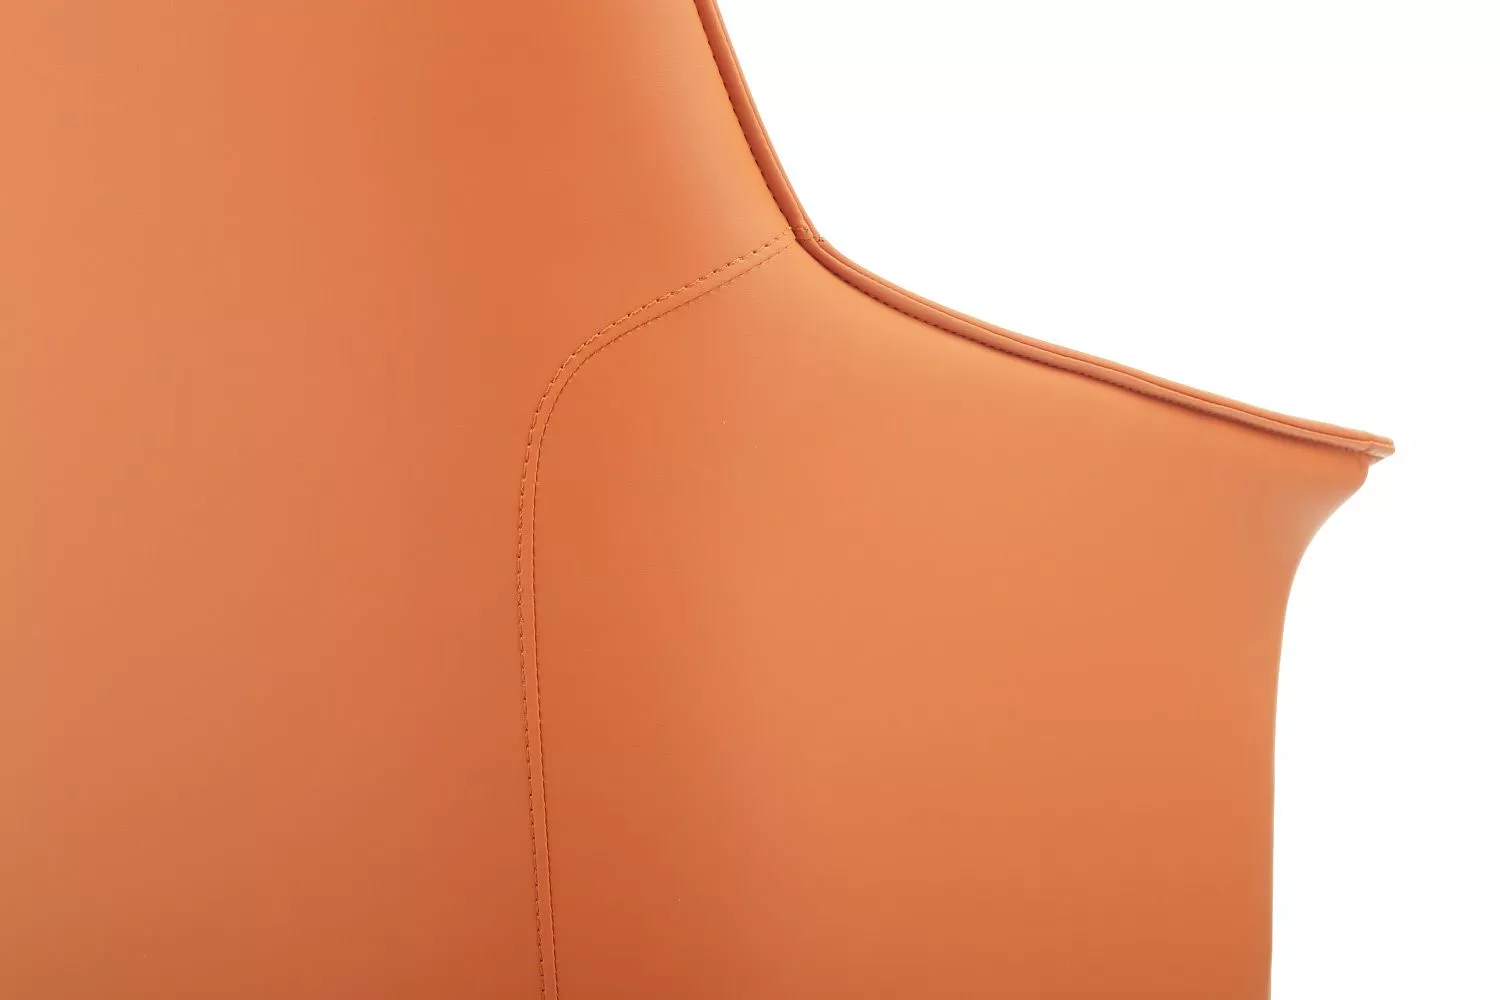 Кресло офисное RIVA DESIGN Rosso-ST (C1918) натуральная кожа оранжевый